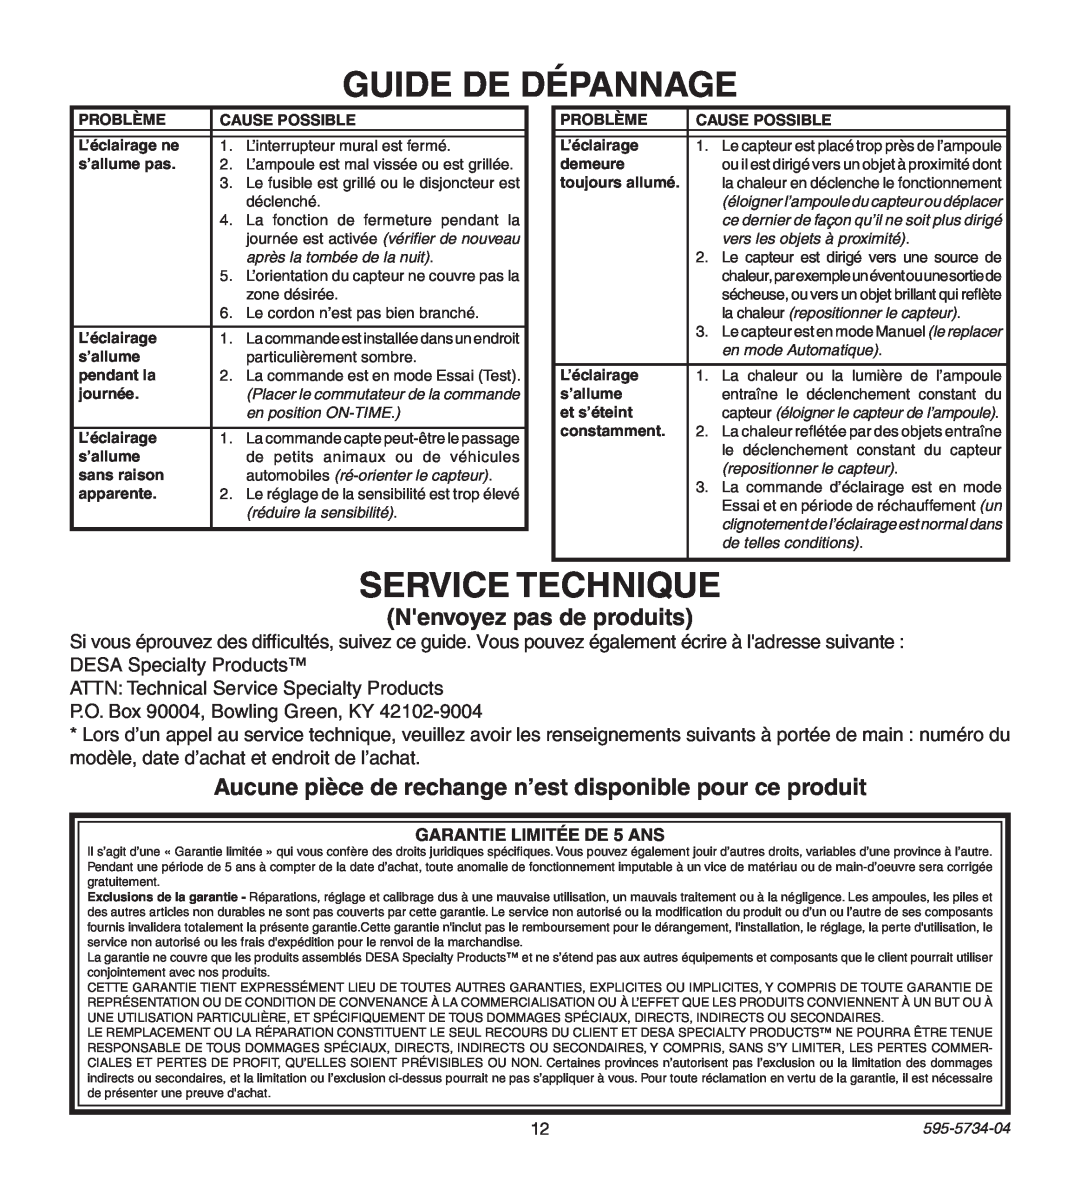 Heath Zenith 5213, 5212 manual Guide De Dépannage, Service Technique, Nenvoyez pas de produits 